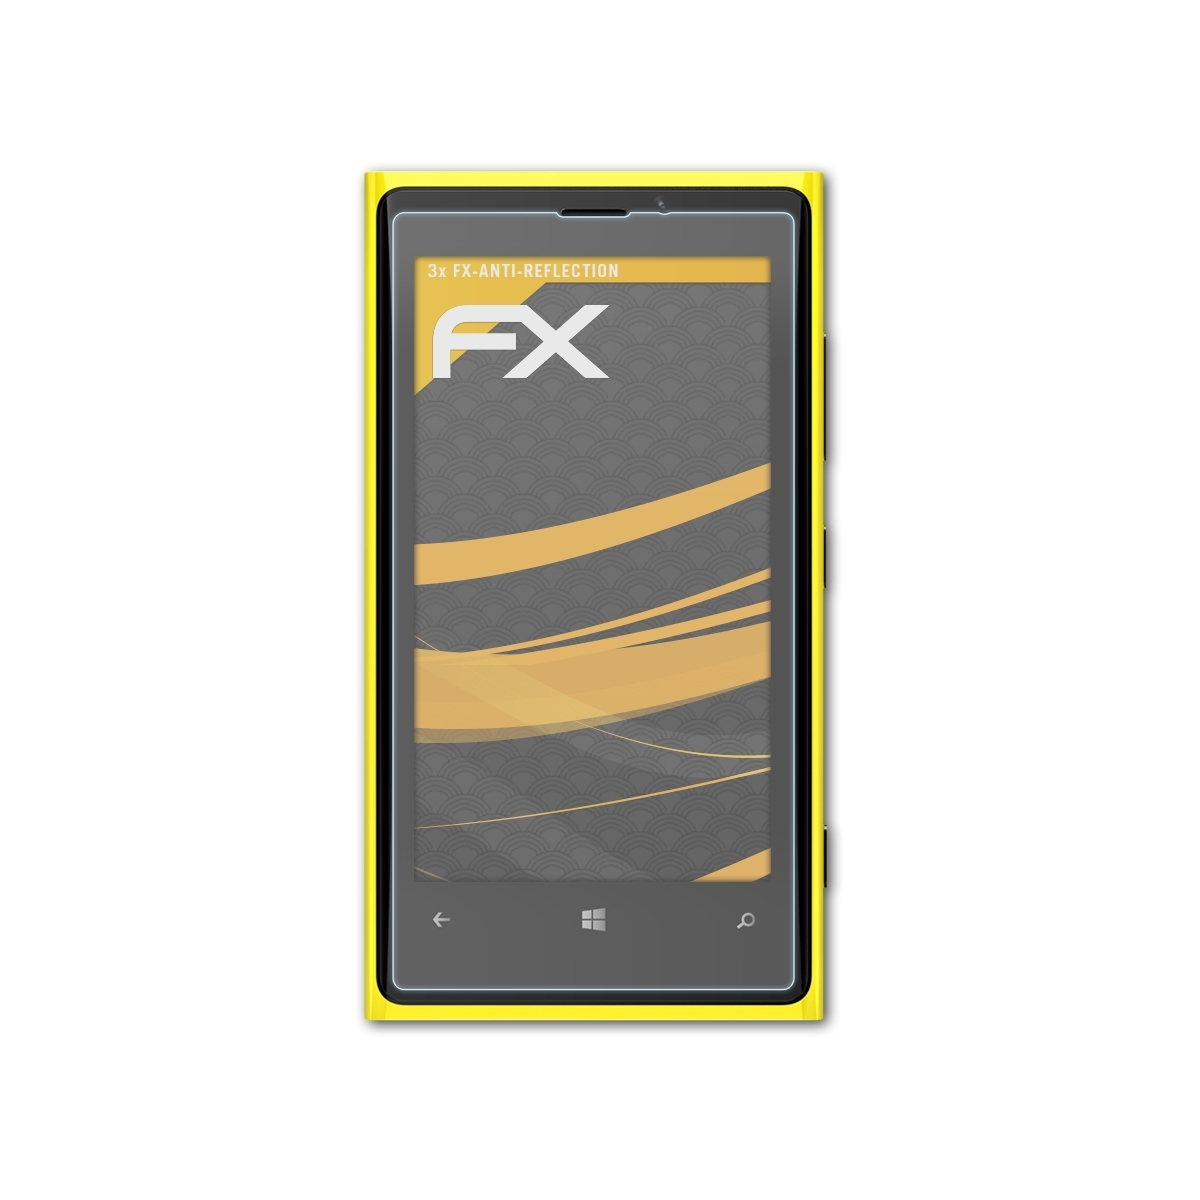 ATFOLIX 3x Nokia 920) FX-Antireflex Displayschutz(für Lumia